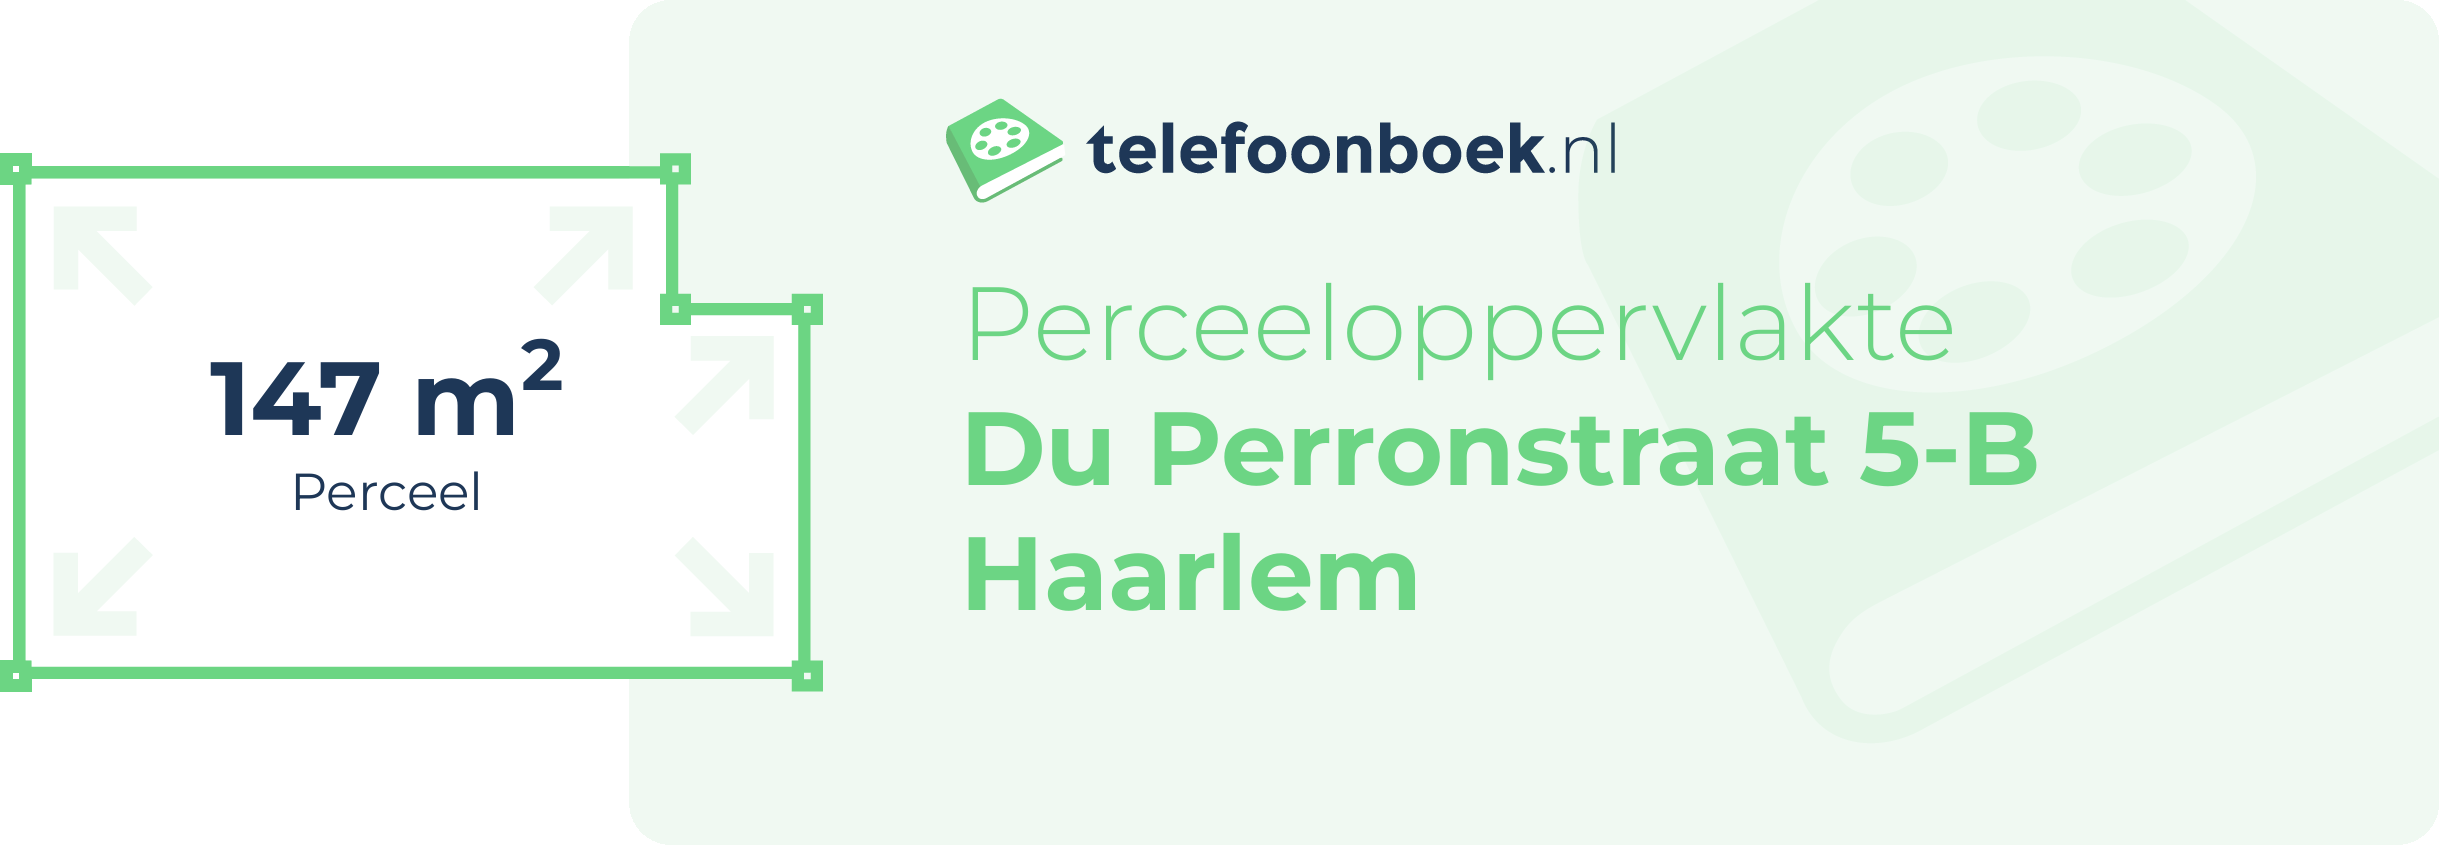 Perceeloppervlakte Du Perronstraat 5-B Haarlem